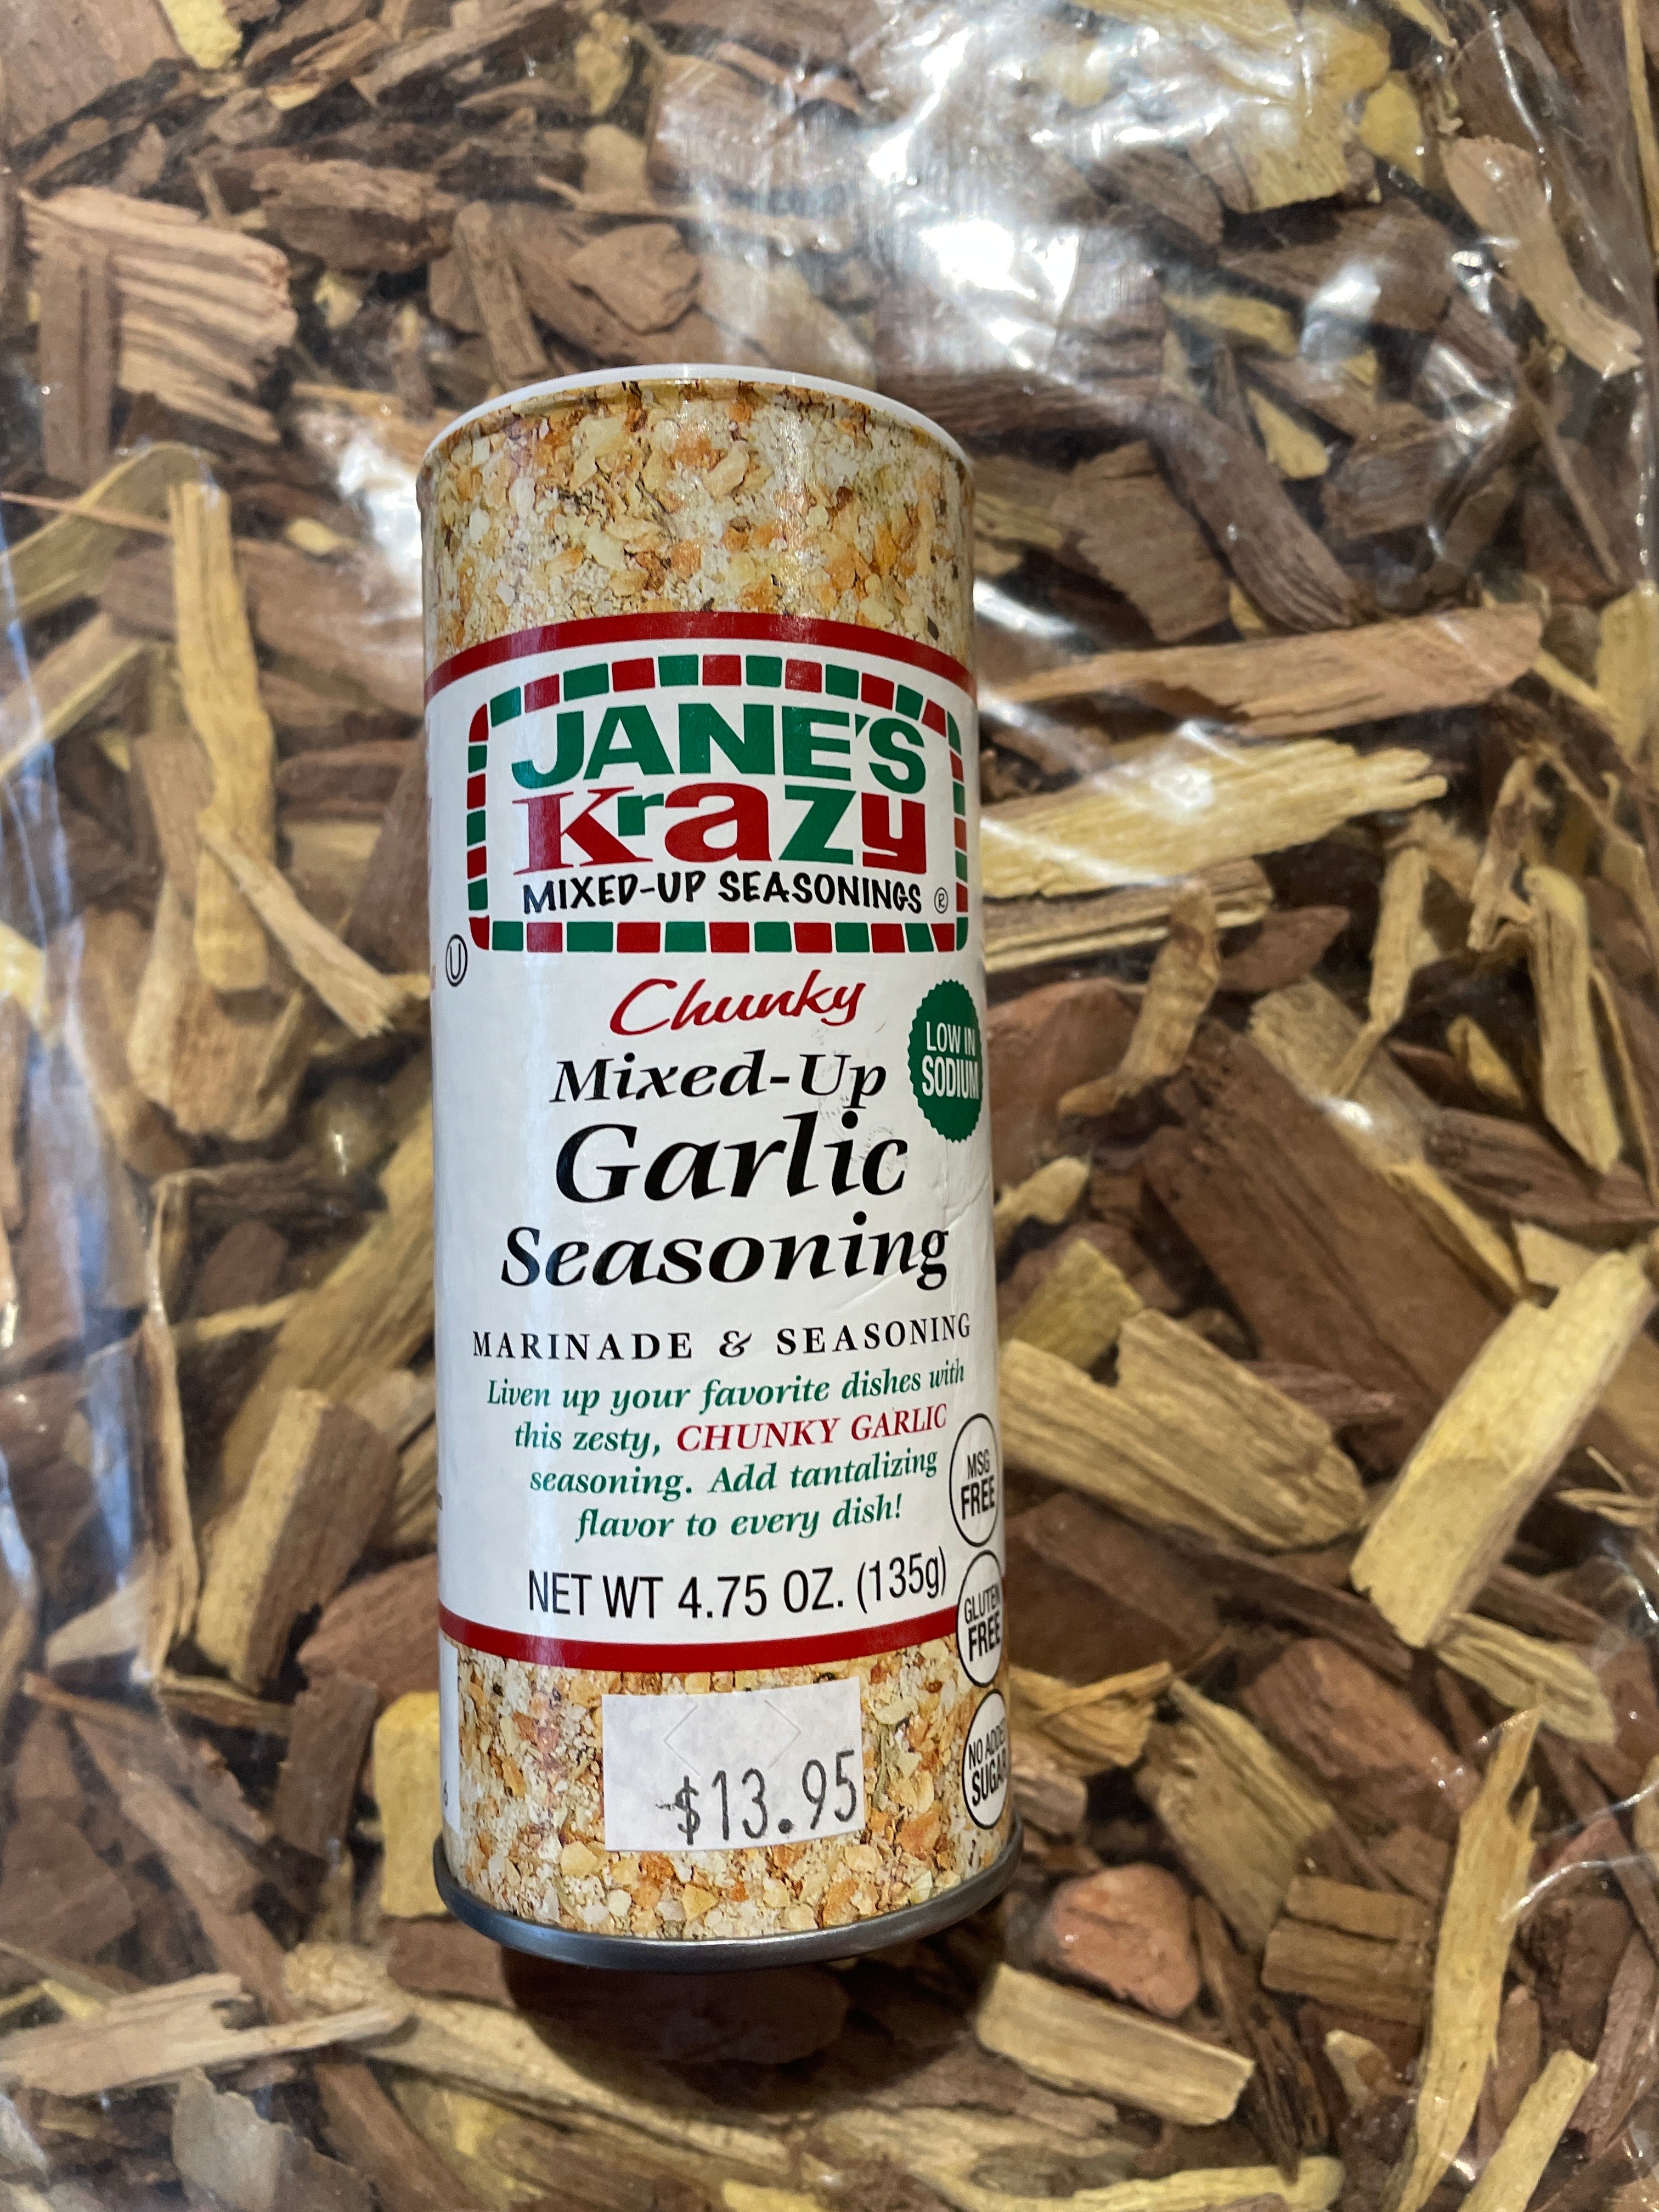 Jane's Krazy Mixed-Up Garlic Seasoning